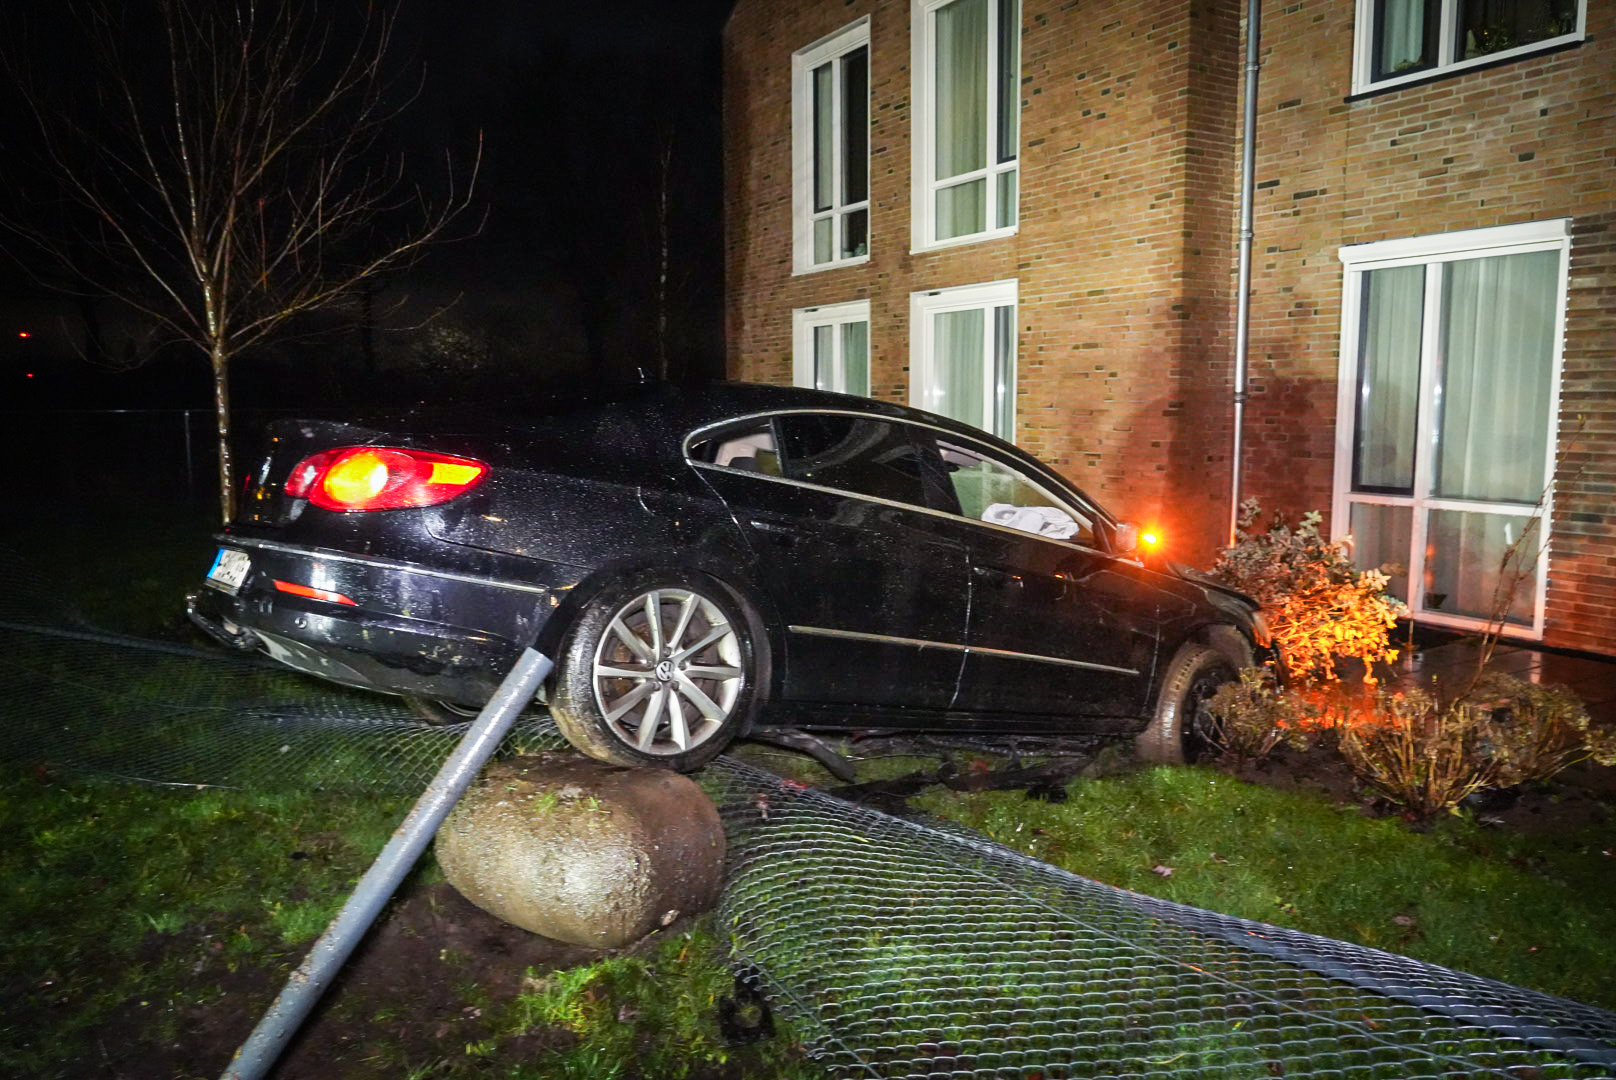 Dronken automobilist belandt in tuin verzorgingshuis